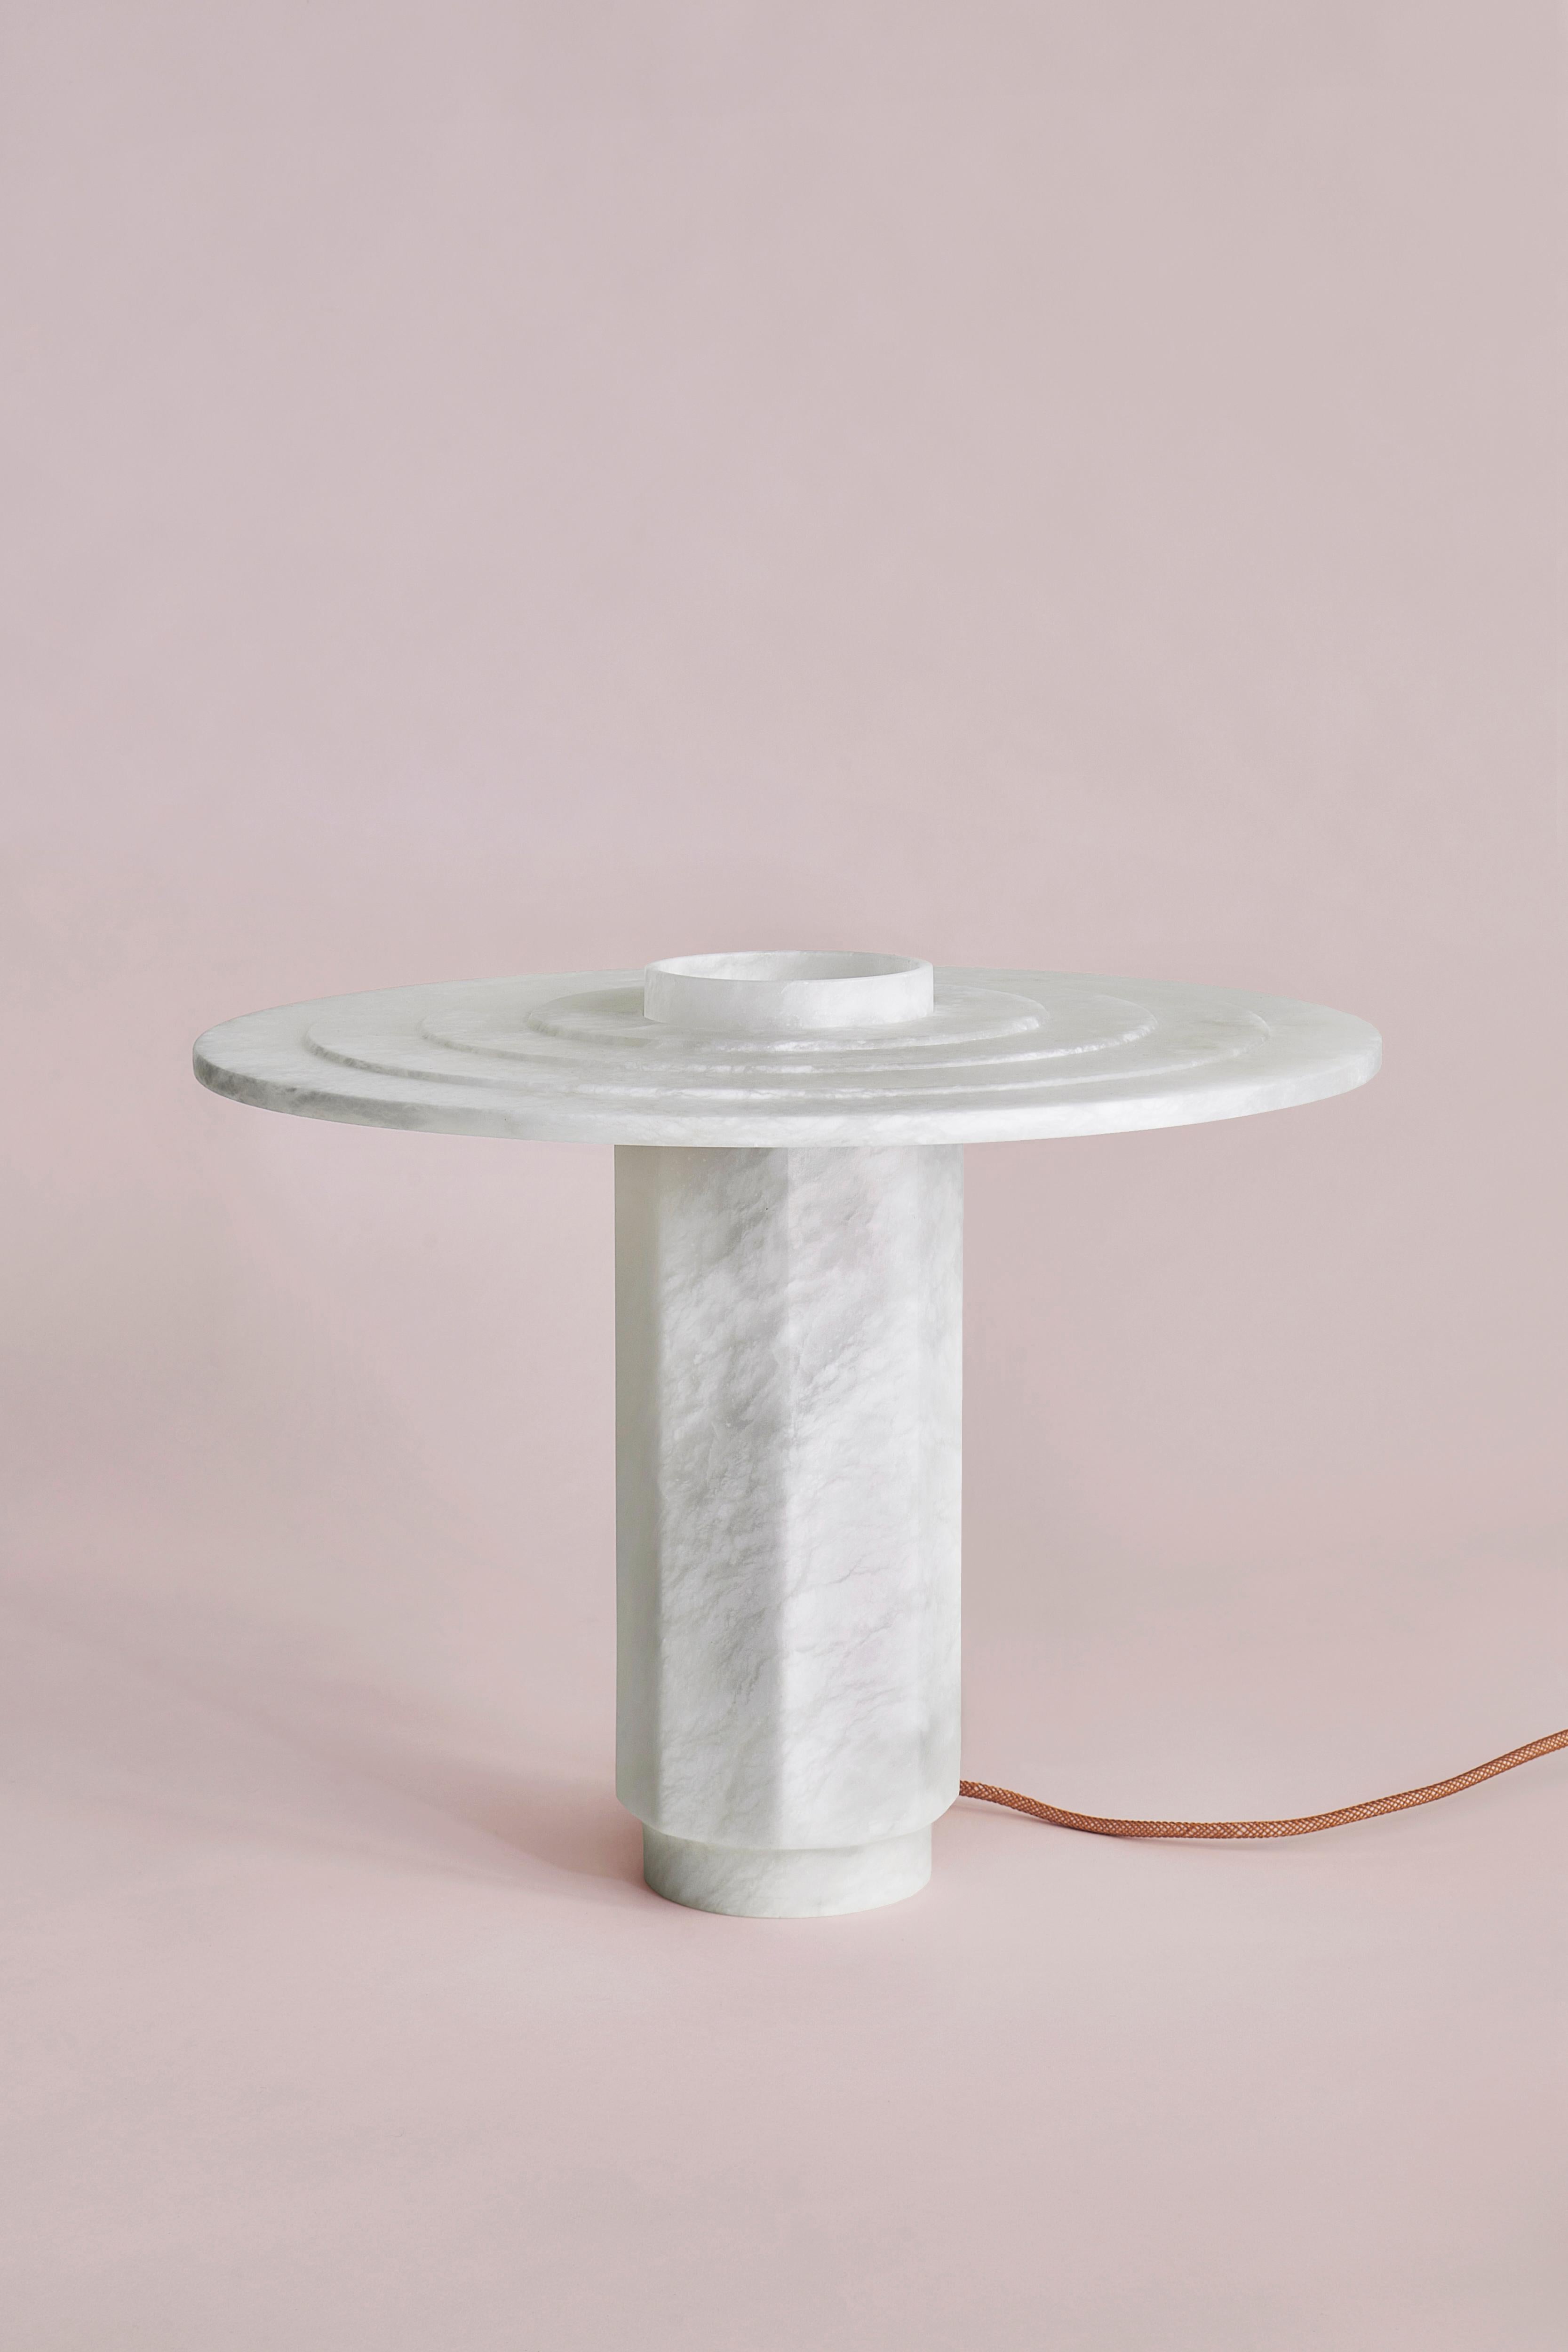 Lampe de table Disco par SB26
Dimensions : L 45 x D 45 x H 37 cm
Matériaux : Albâtre, Source LED.

Dans un vocabulaire géométrique cohérent, cette famille de lampes dévoile l'image de l'homme et de la femme.
la nature translucide et organique de